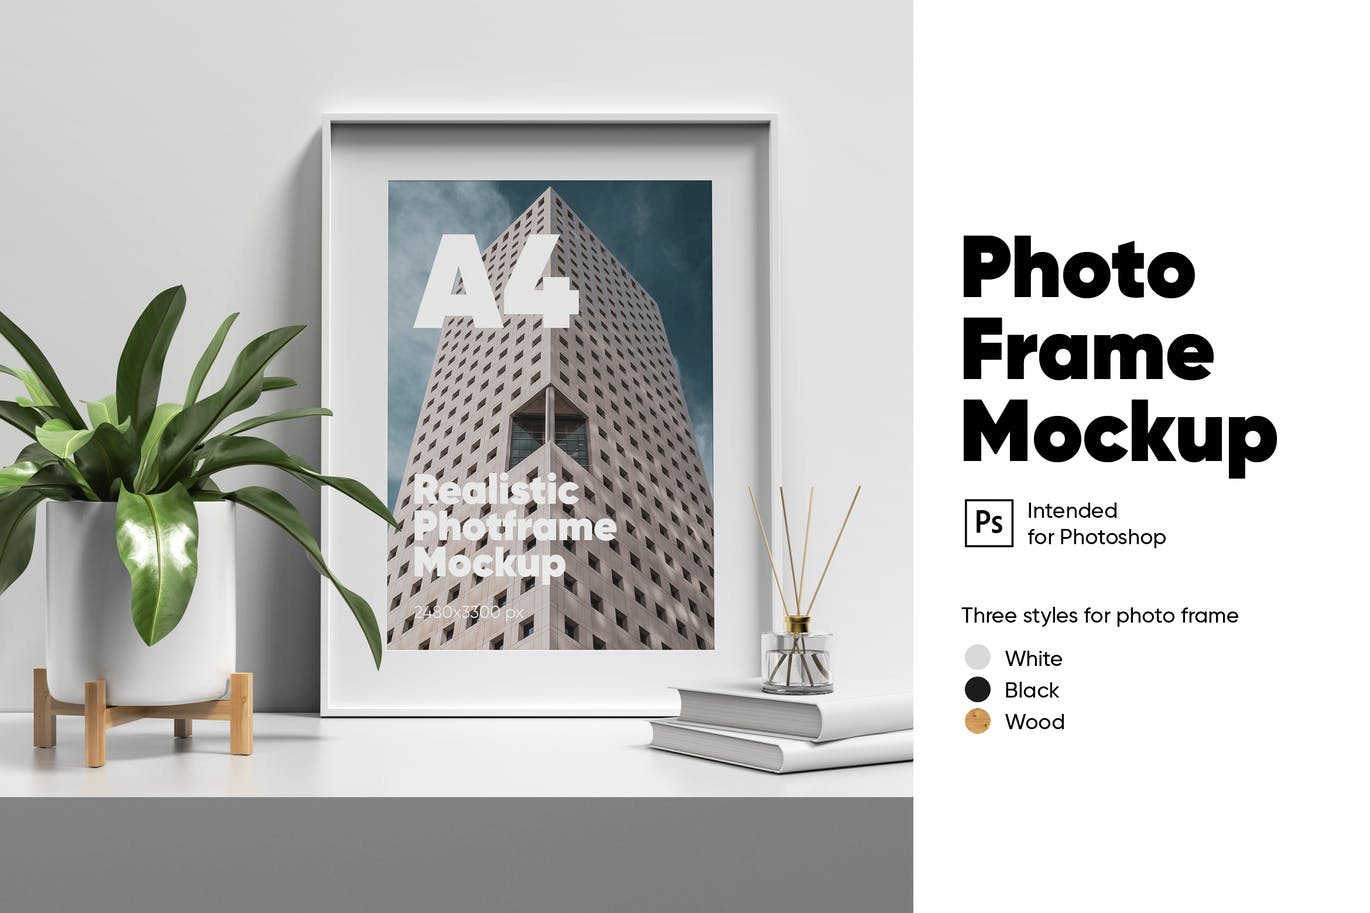 木质艺术边框设计预览样机 Photo Frame Mockup设计素材模板